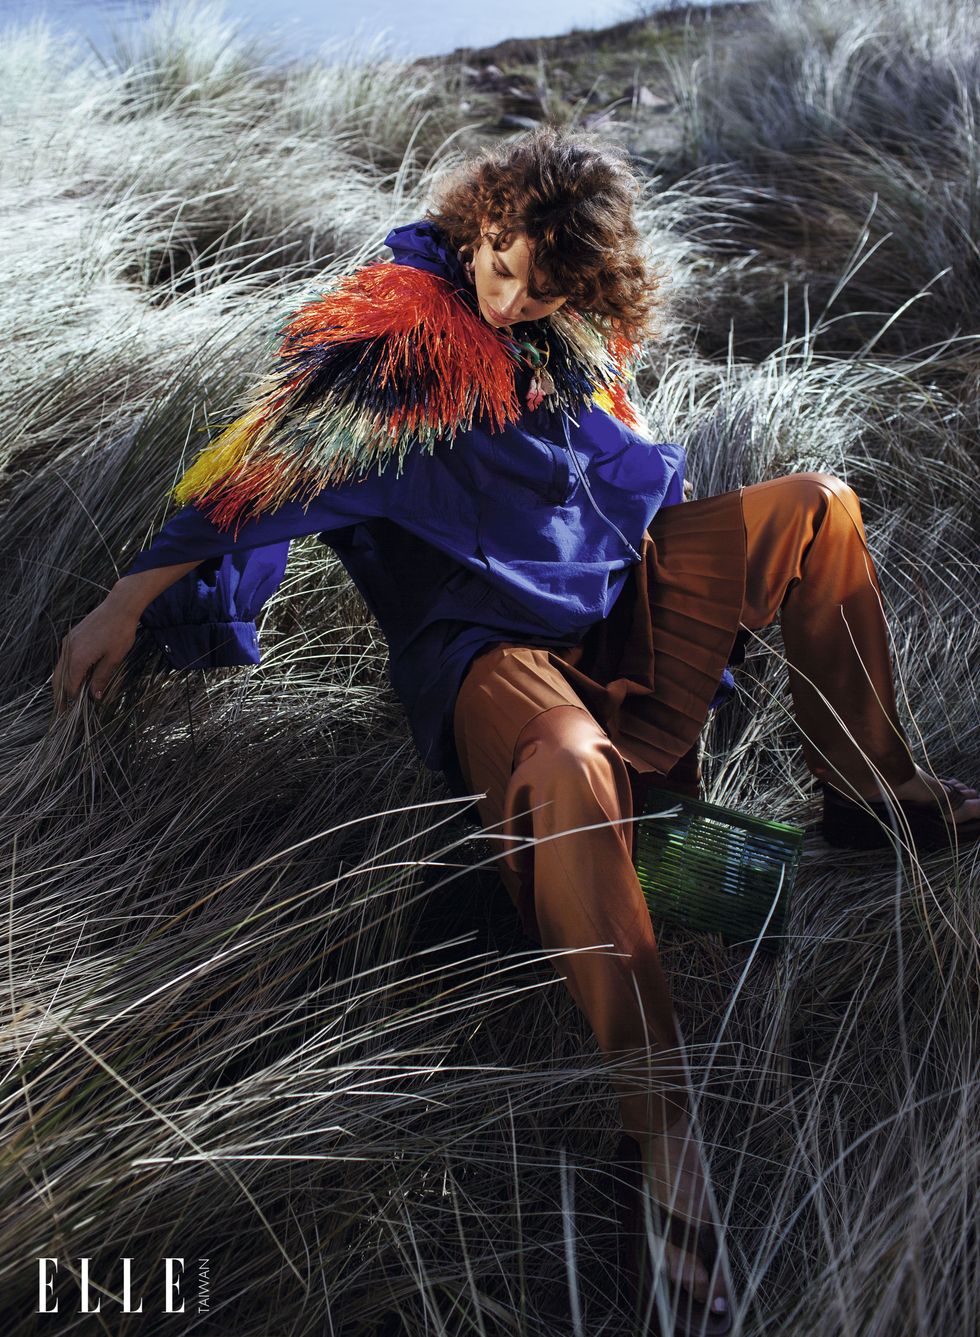 一個女人穿著風衣、彩色草編披風臥在草堆中